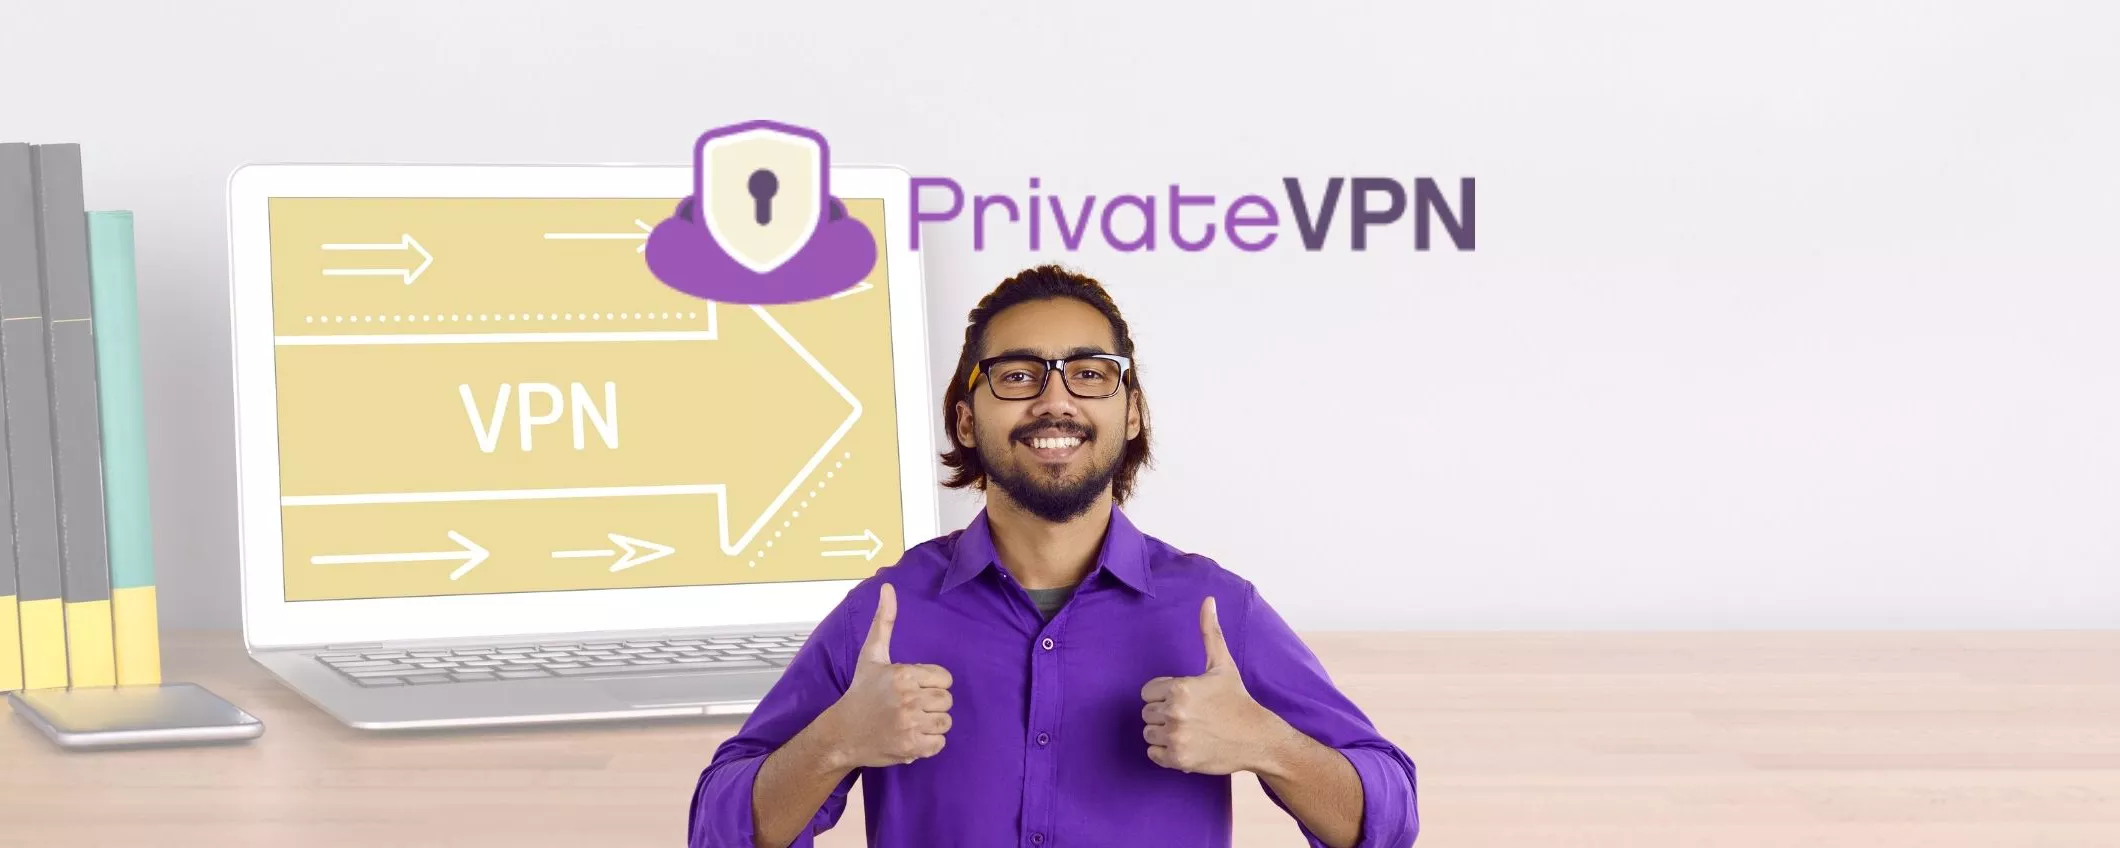 Saldi online PrivateVPN: prezzo super basso per i nuovi clienti